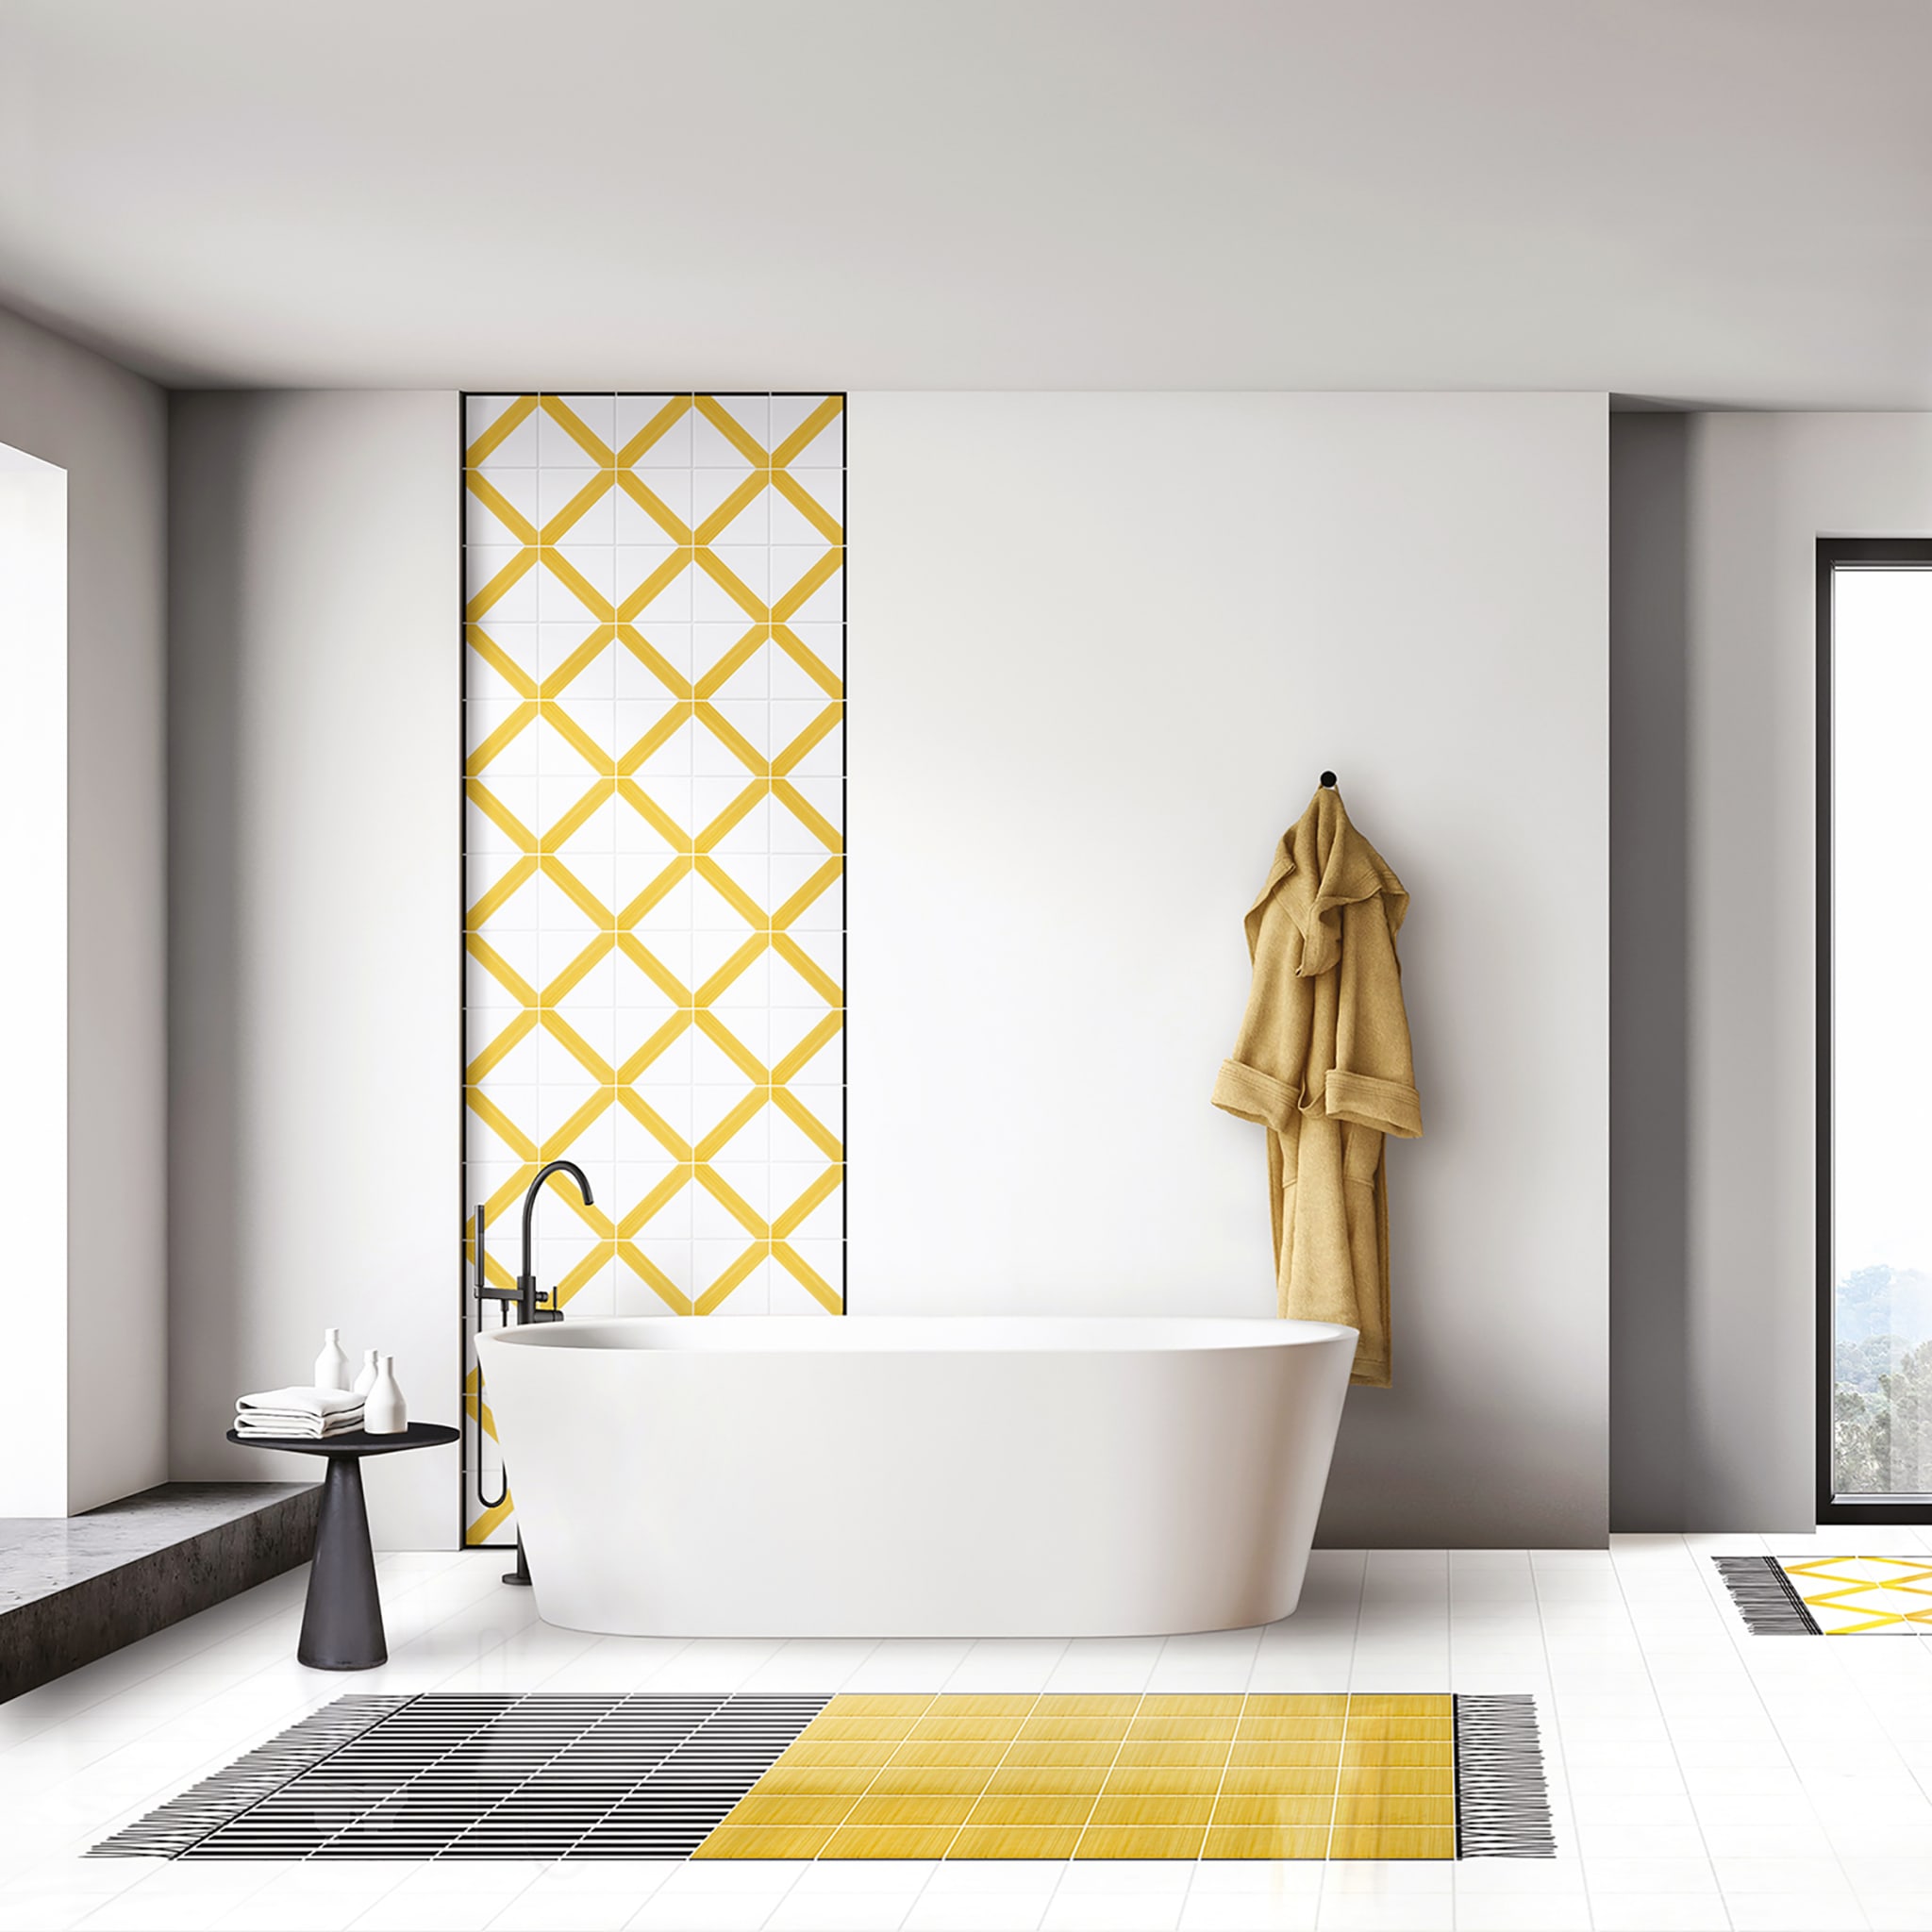 Carpet Total Yellow Ceramic Composition by Giuliano Andrea dell’Uva 160 x 120 - Alternative view 1